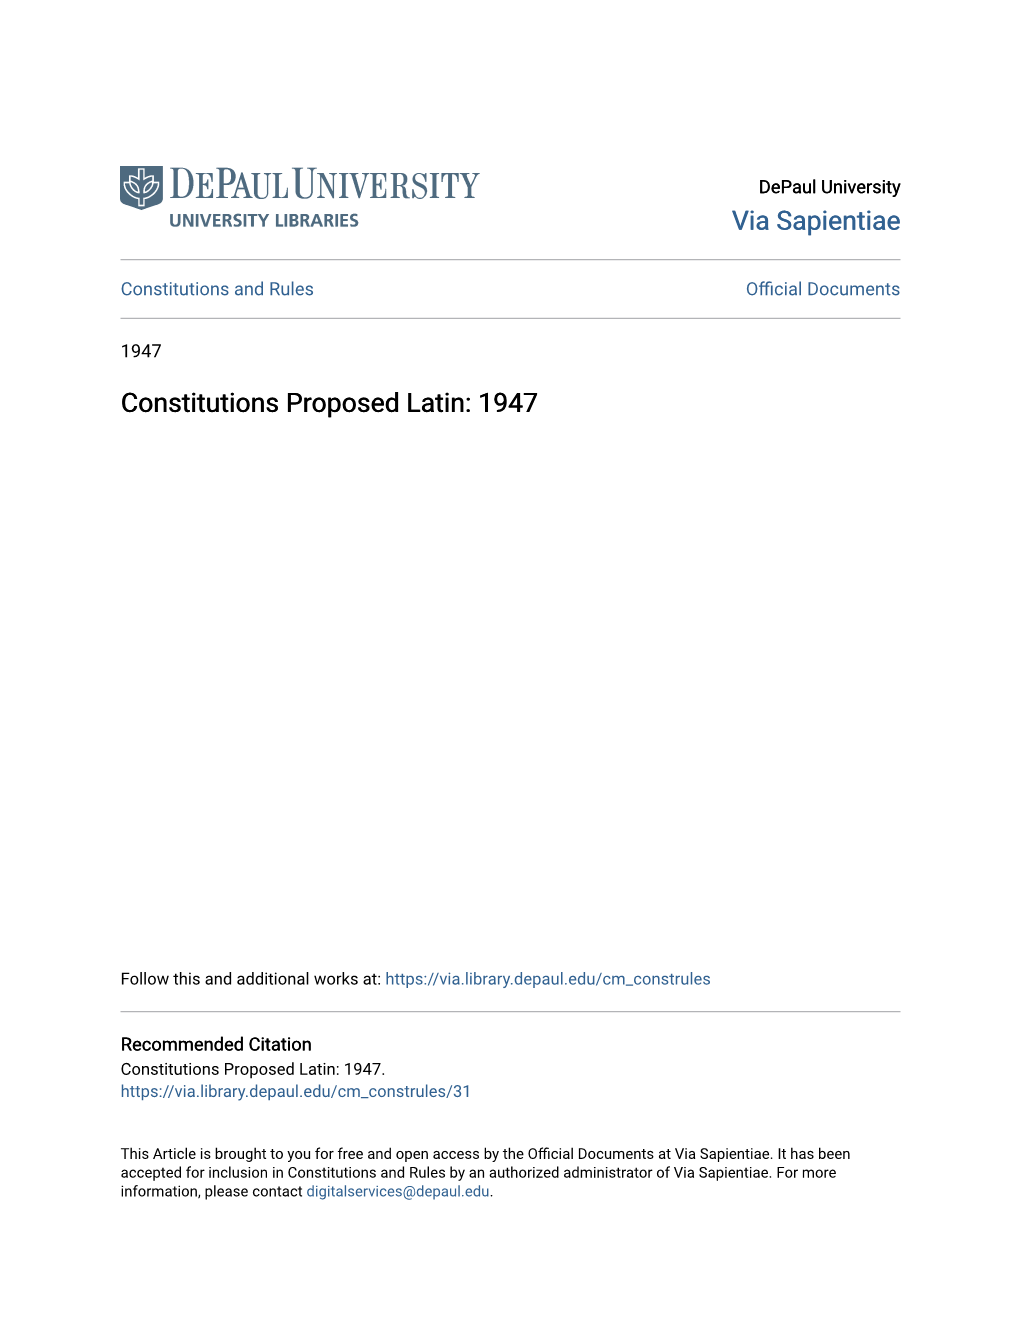 Constitutions Proposed Latin: 1947